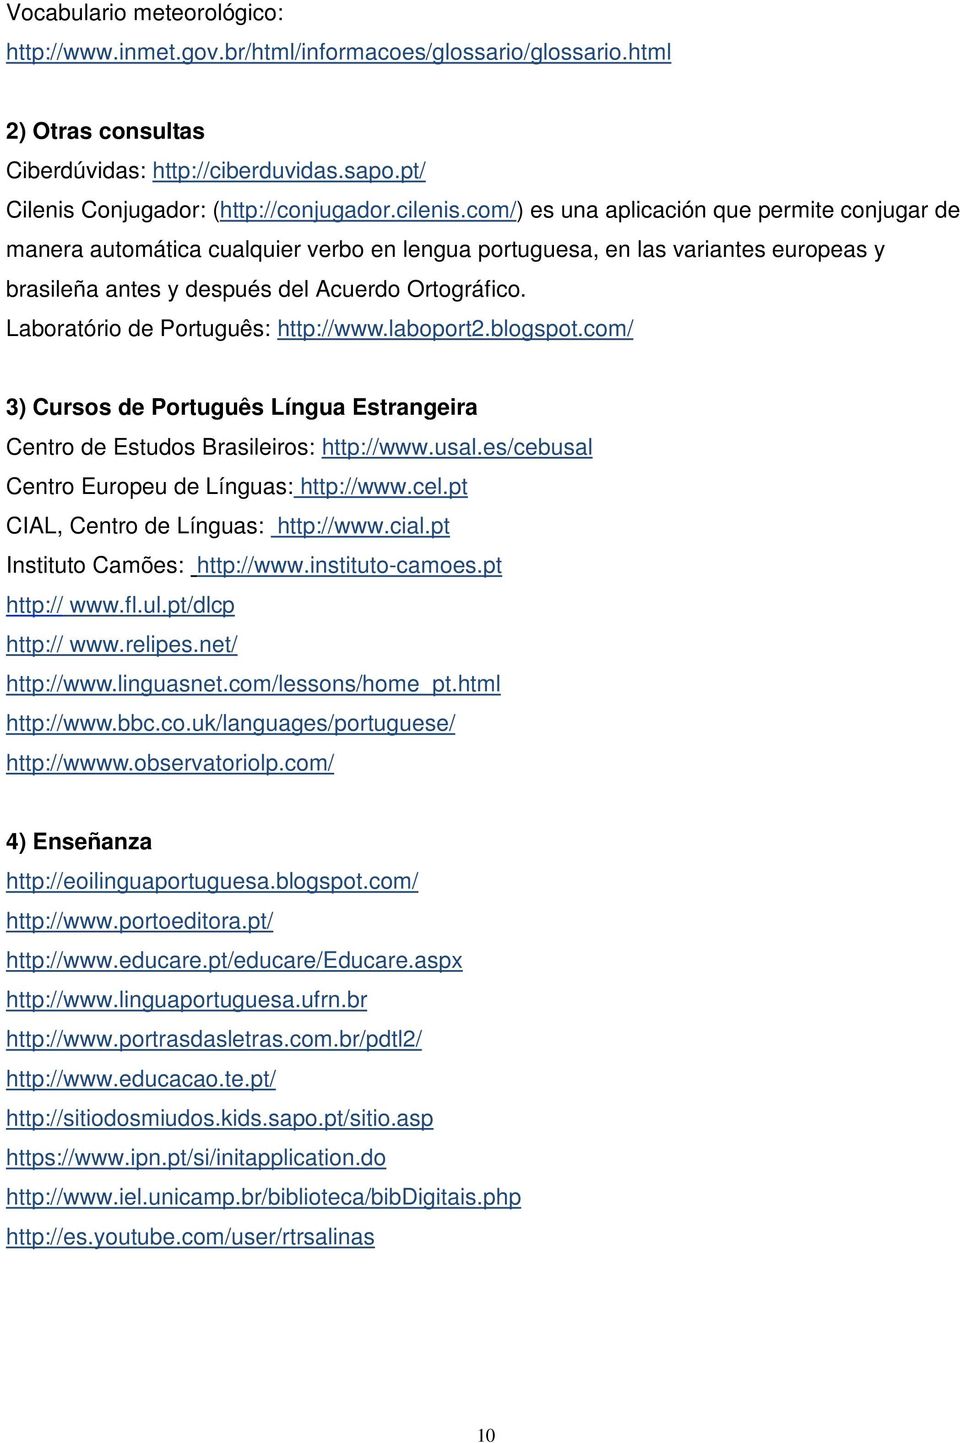 Laboratório de Português: http://www.laboport2.blogspot.com/ 3) Cursos de Português Língua Estrangeira Centro de Estudos Brasileiros: http://www.usal.es/cebusal Centro Europeu de Línguas: http://www.